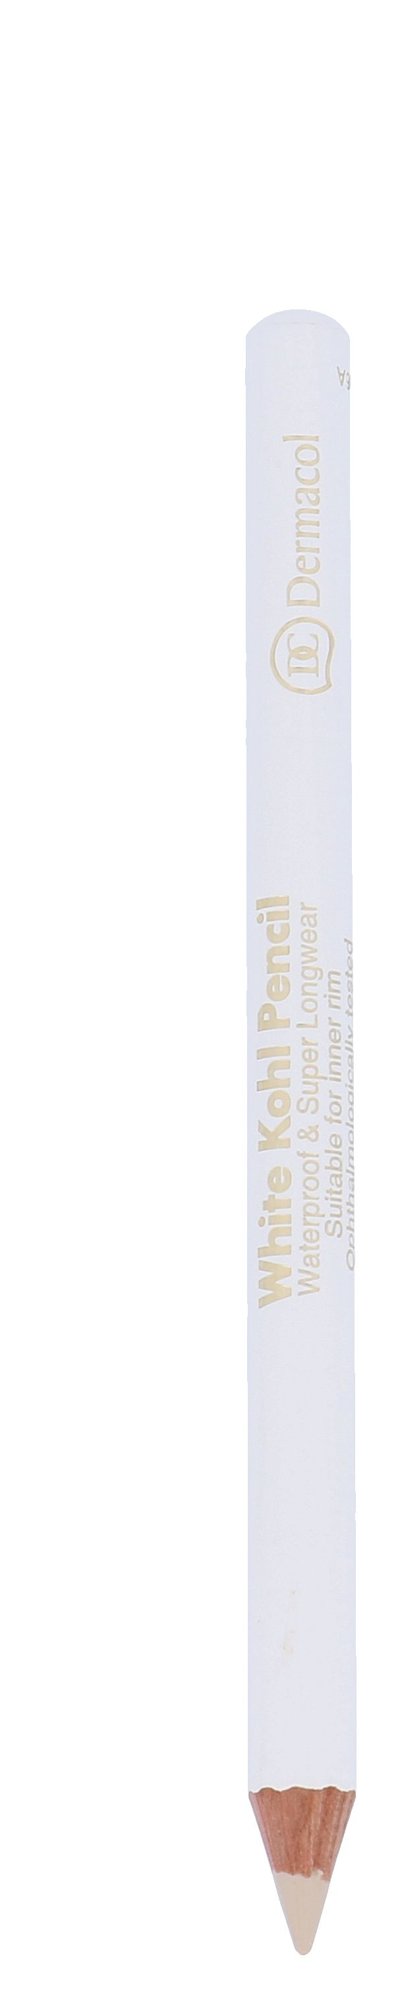 Dermacol White Kohl Pencil akių pieštukas